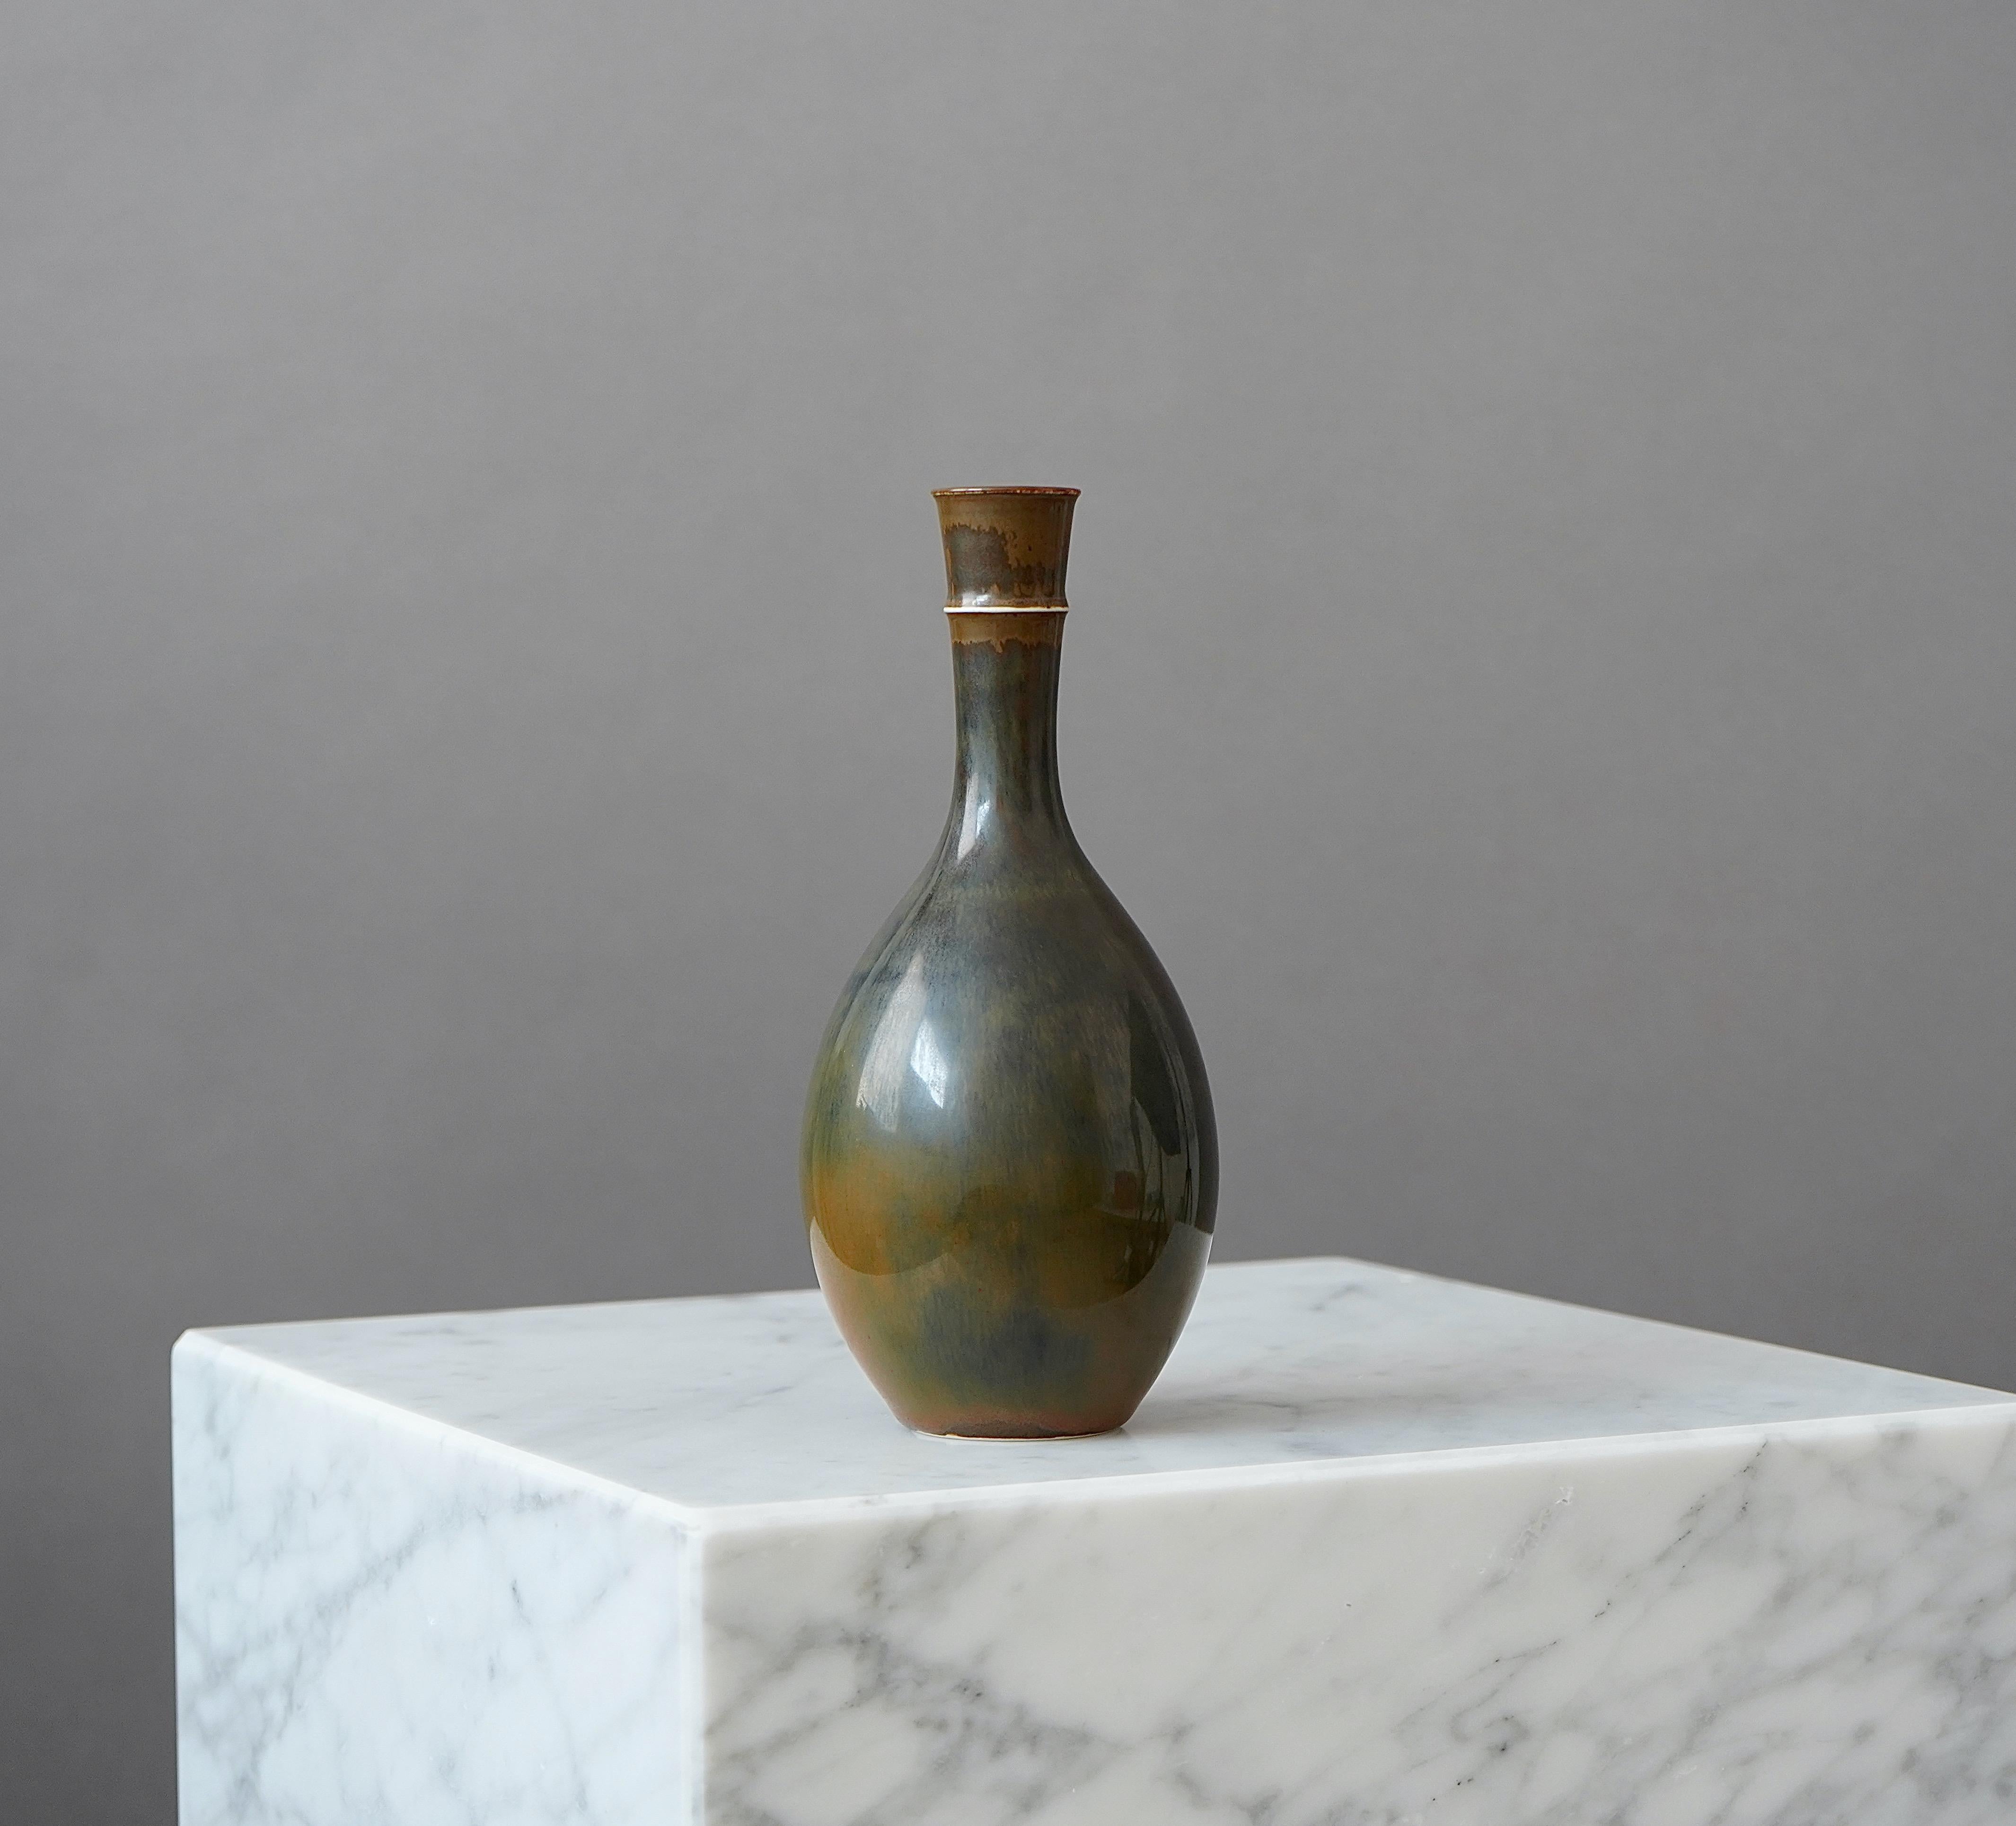 Scandinavian Modern Stoneware Vase by Stig Lindberg for Gustavsberg Studio, Sweden, 1950s For Sale